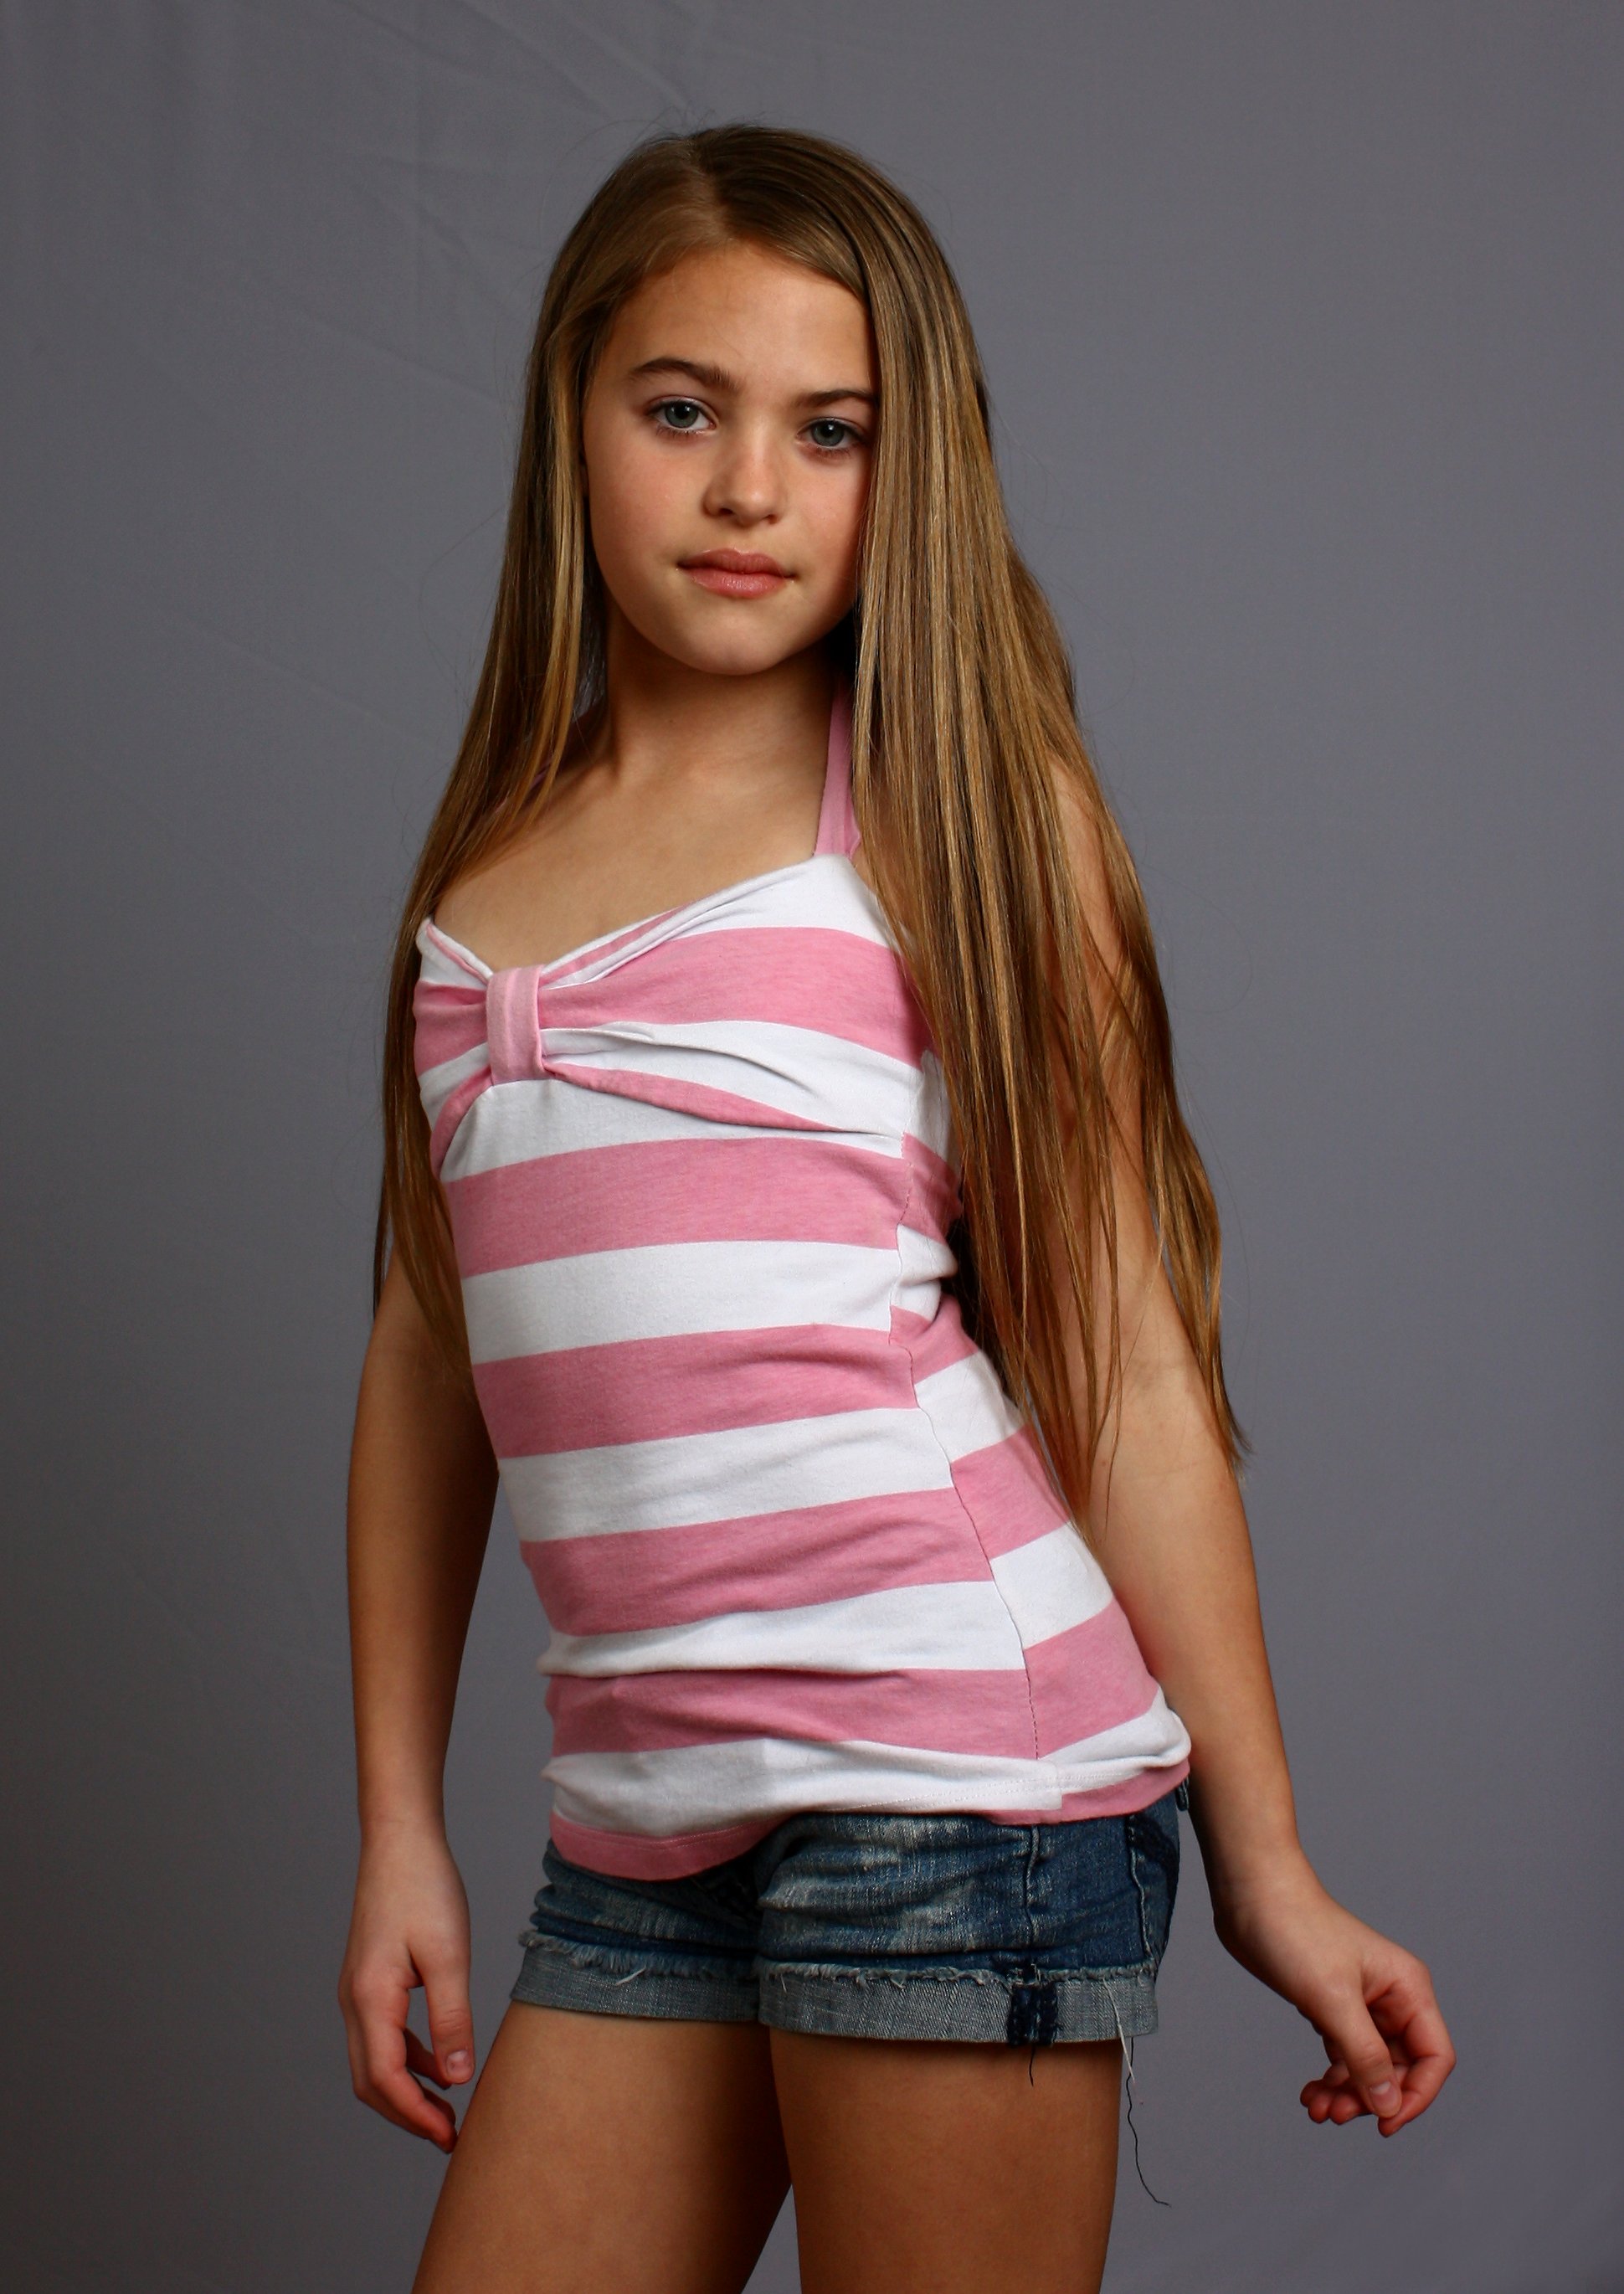 A beautiful young girl posing on gray, Beautiful, Children, Cute, Female, HQ Photo